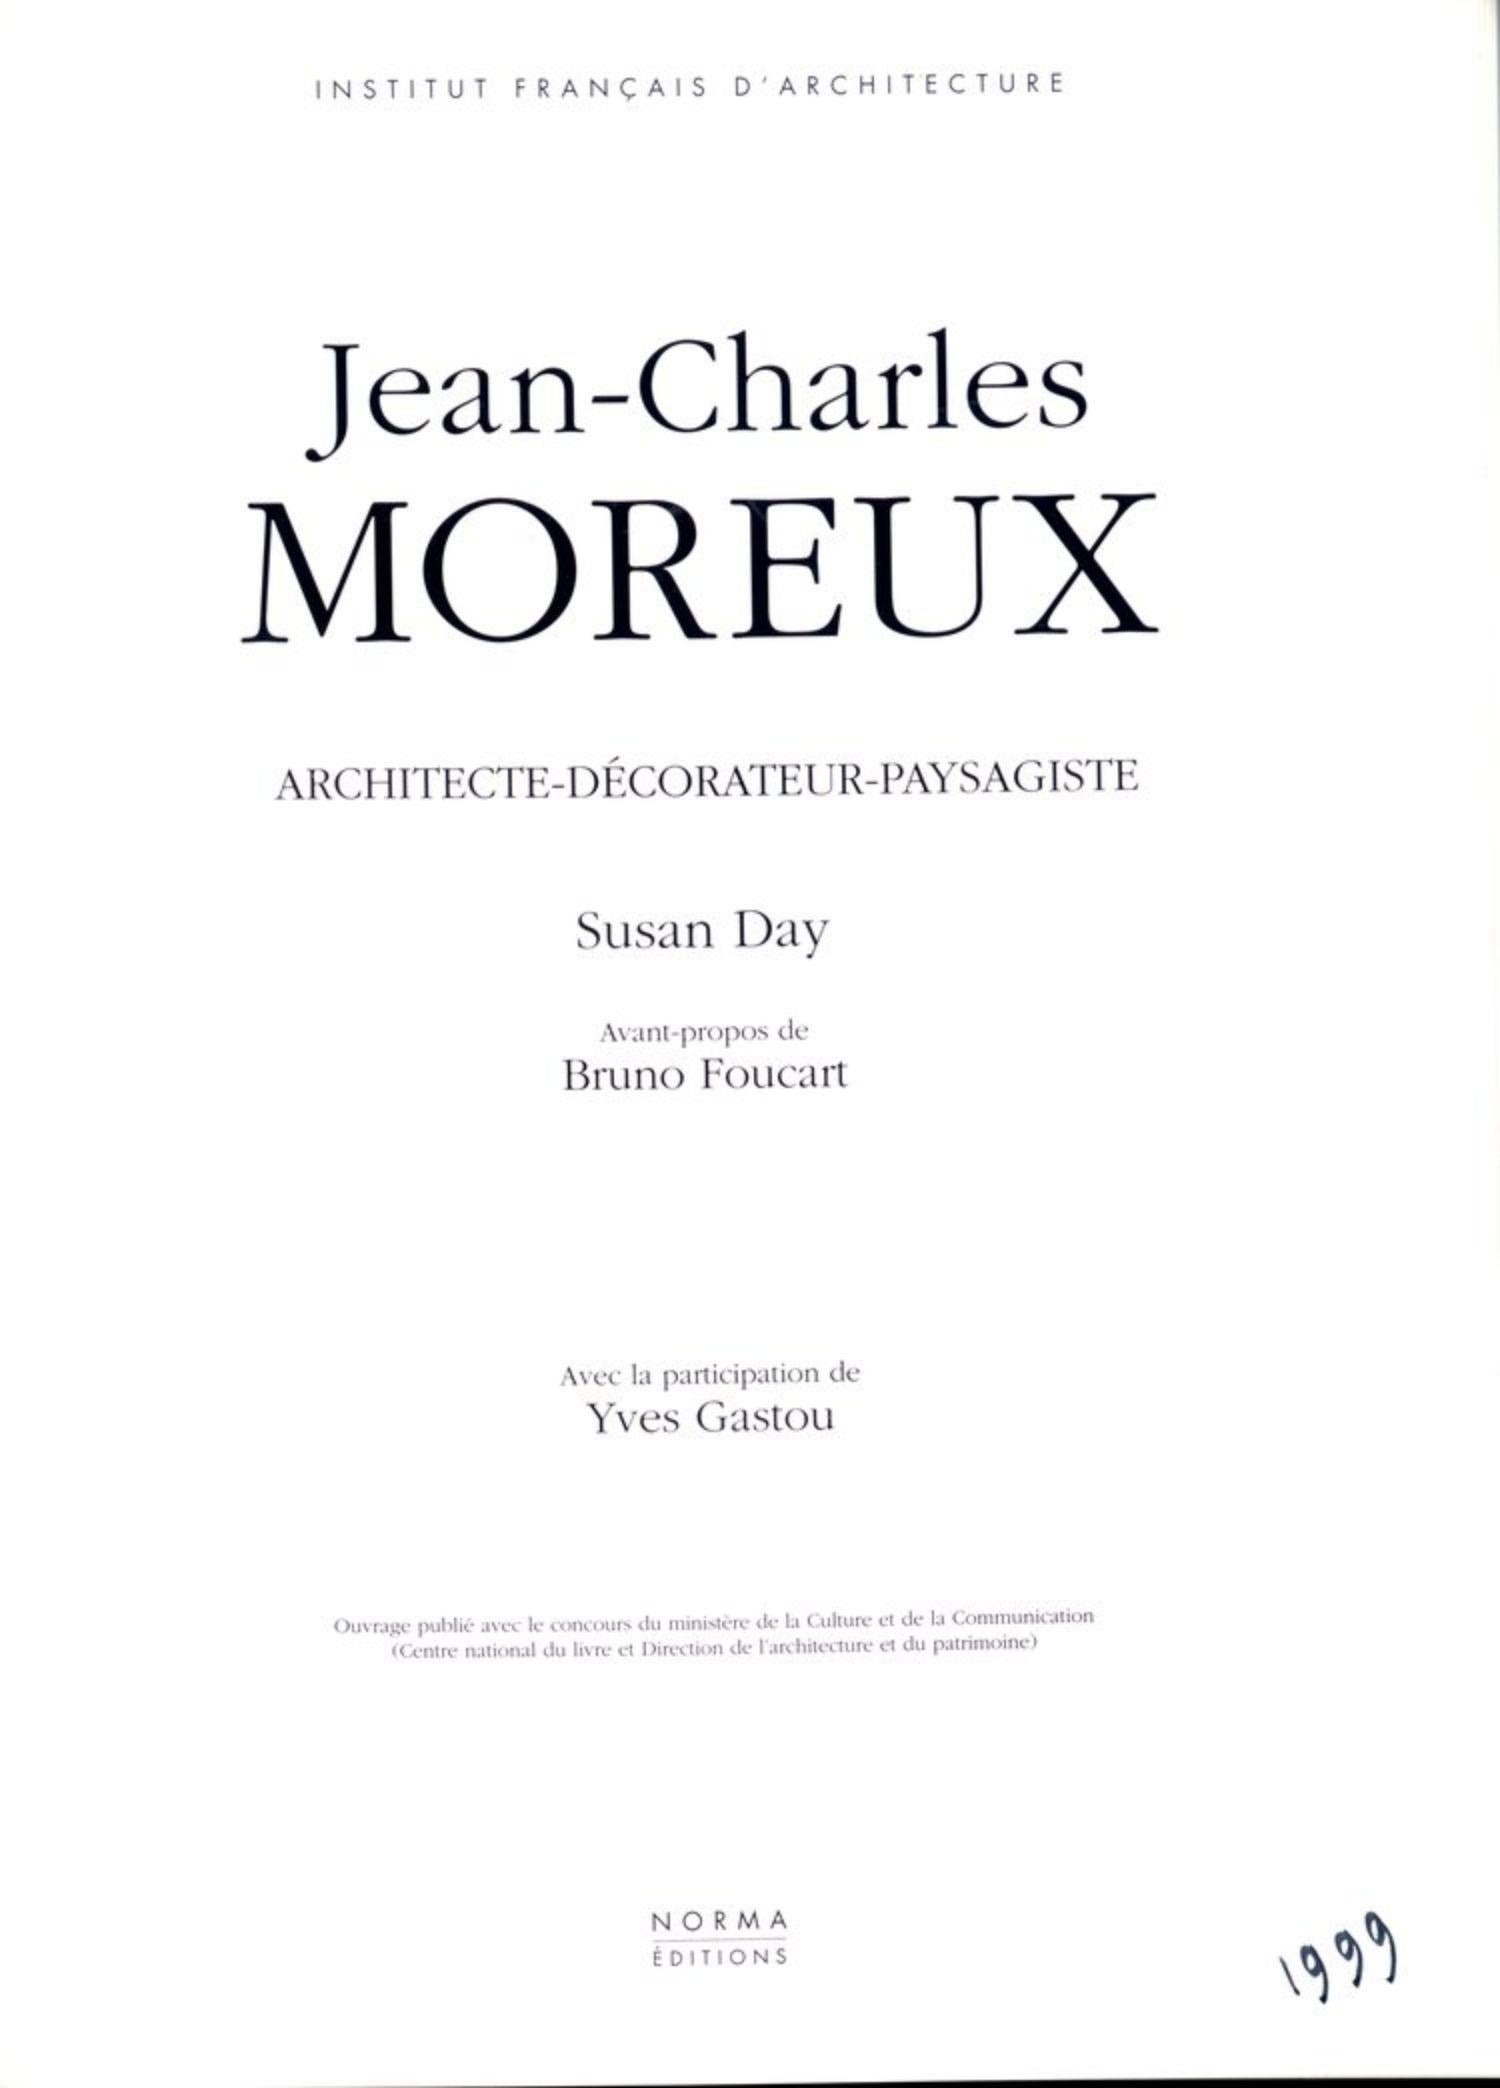 Ein Paar vergoldete, handgeschmiedete Eisensessel von Jean-Charles Moreux, um 1936. Inspiriert von Louis XV, Teil von Moreux' Gegenentwurf zum Funktionalismus.

Abgebildet mit passender Bank. Dieses Angebot gilt nur für den Sessel.

Maße: 27